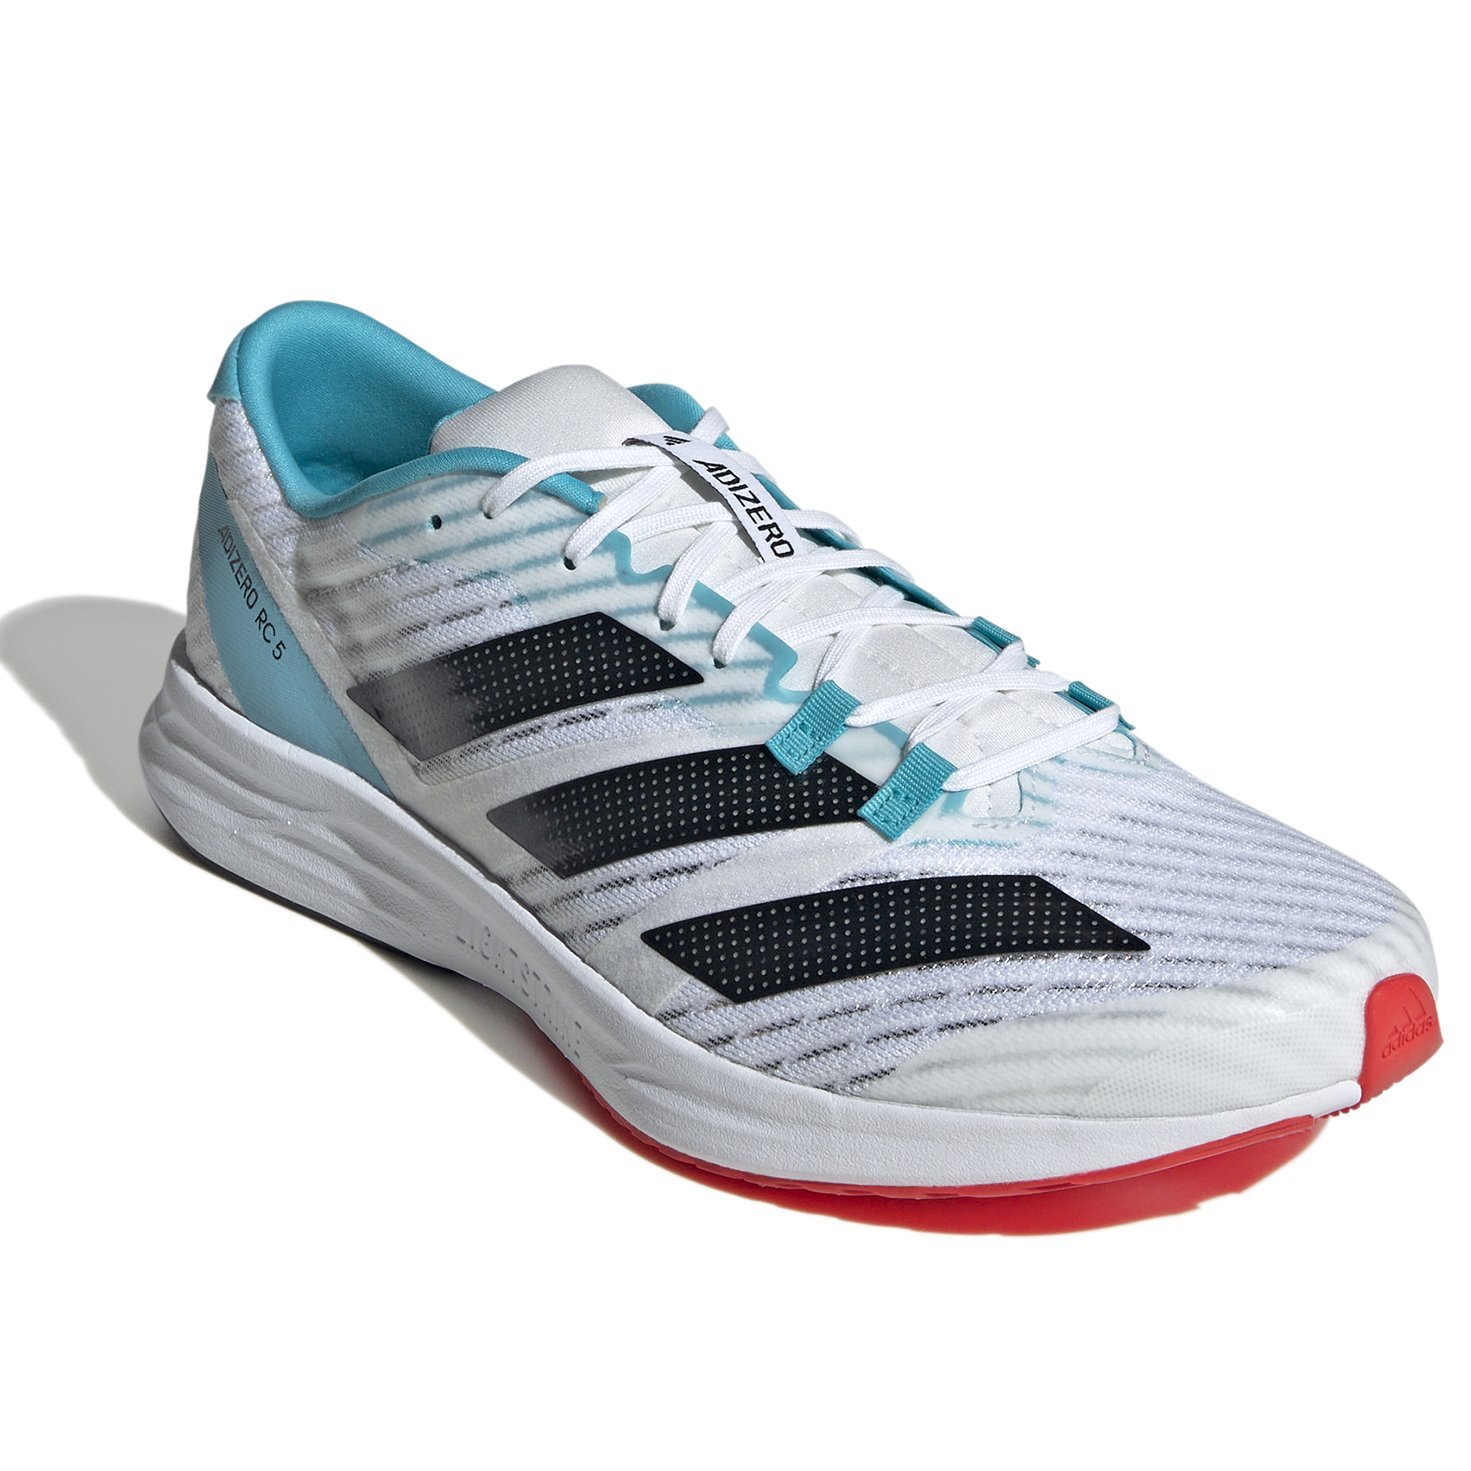 Adidas Adizero Rc 5 Erkek Koşu Ayakkabısı